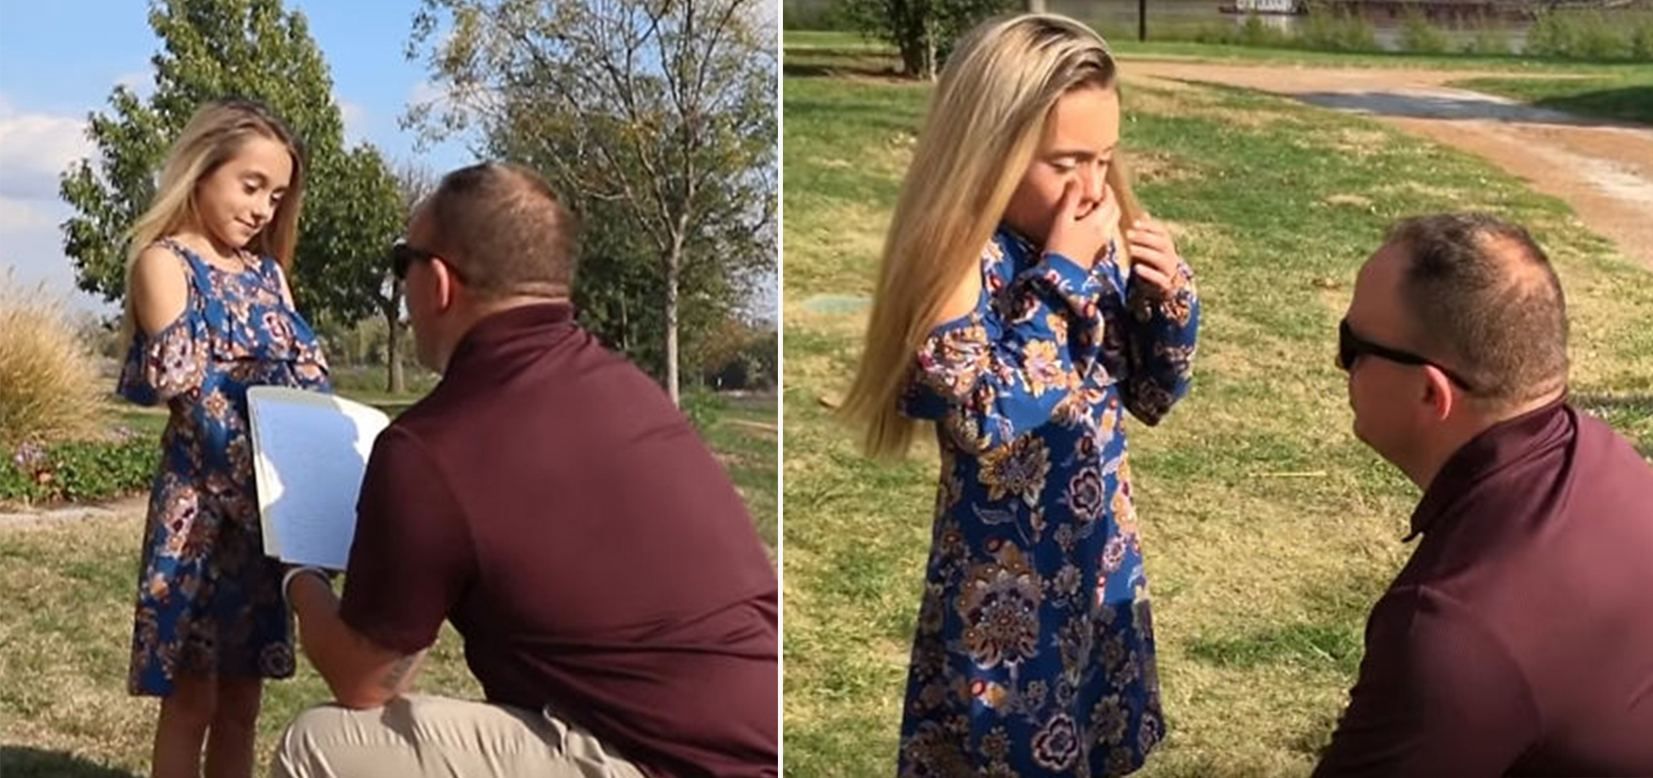 Мужчина официально усыновил дочь жены после свадьбы: видео трогательной реакции девочки